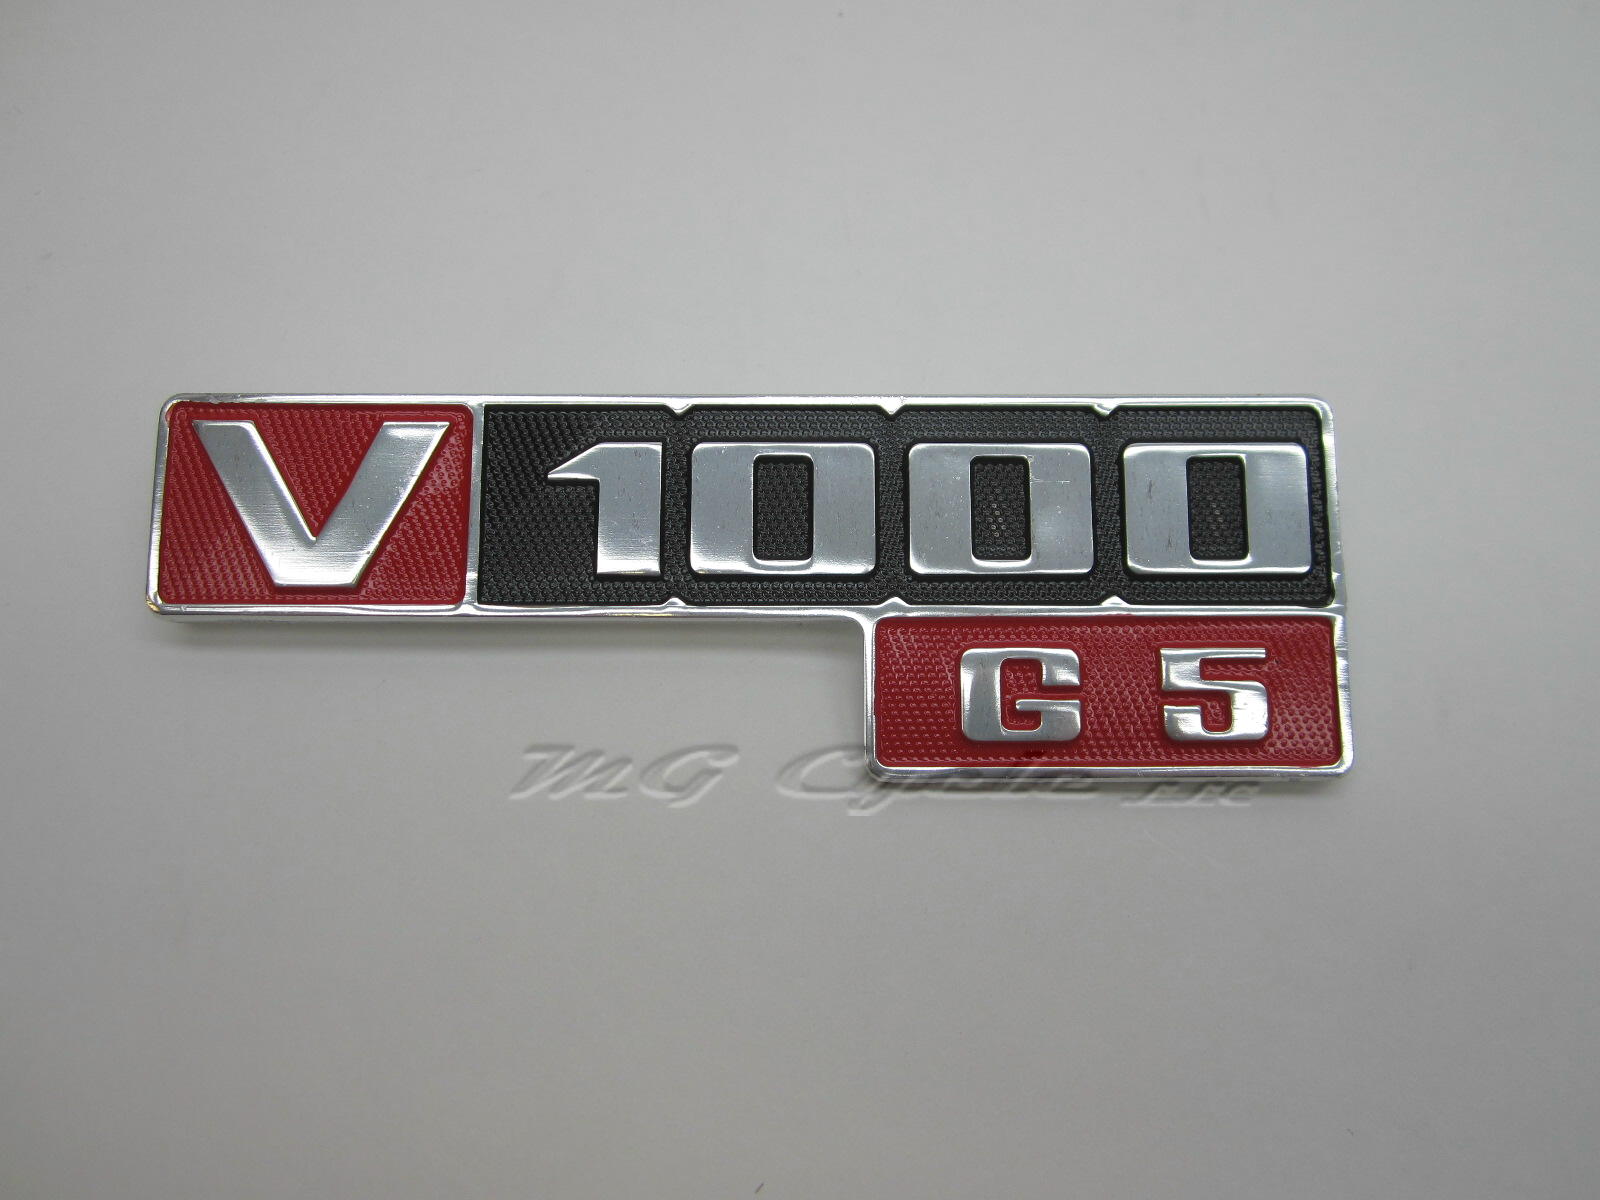 Side cover emblem, V1000 G5 GU18922001